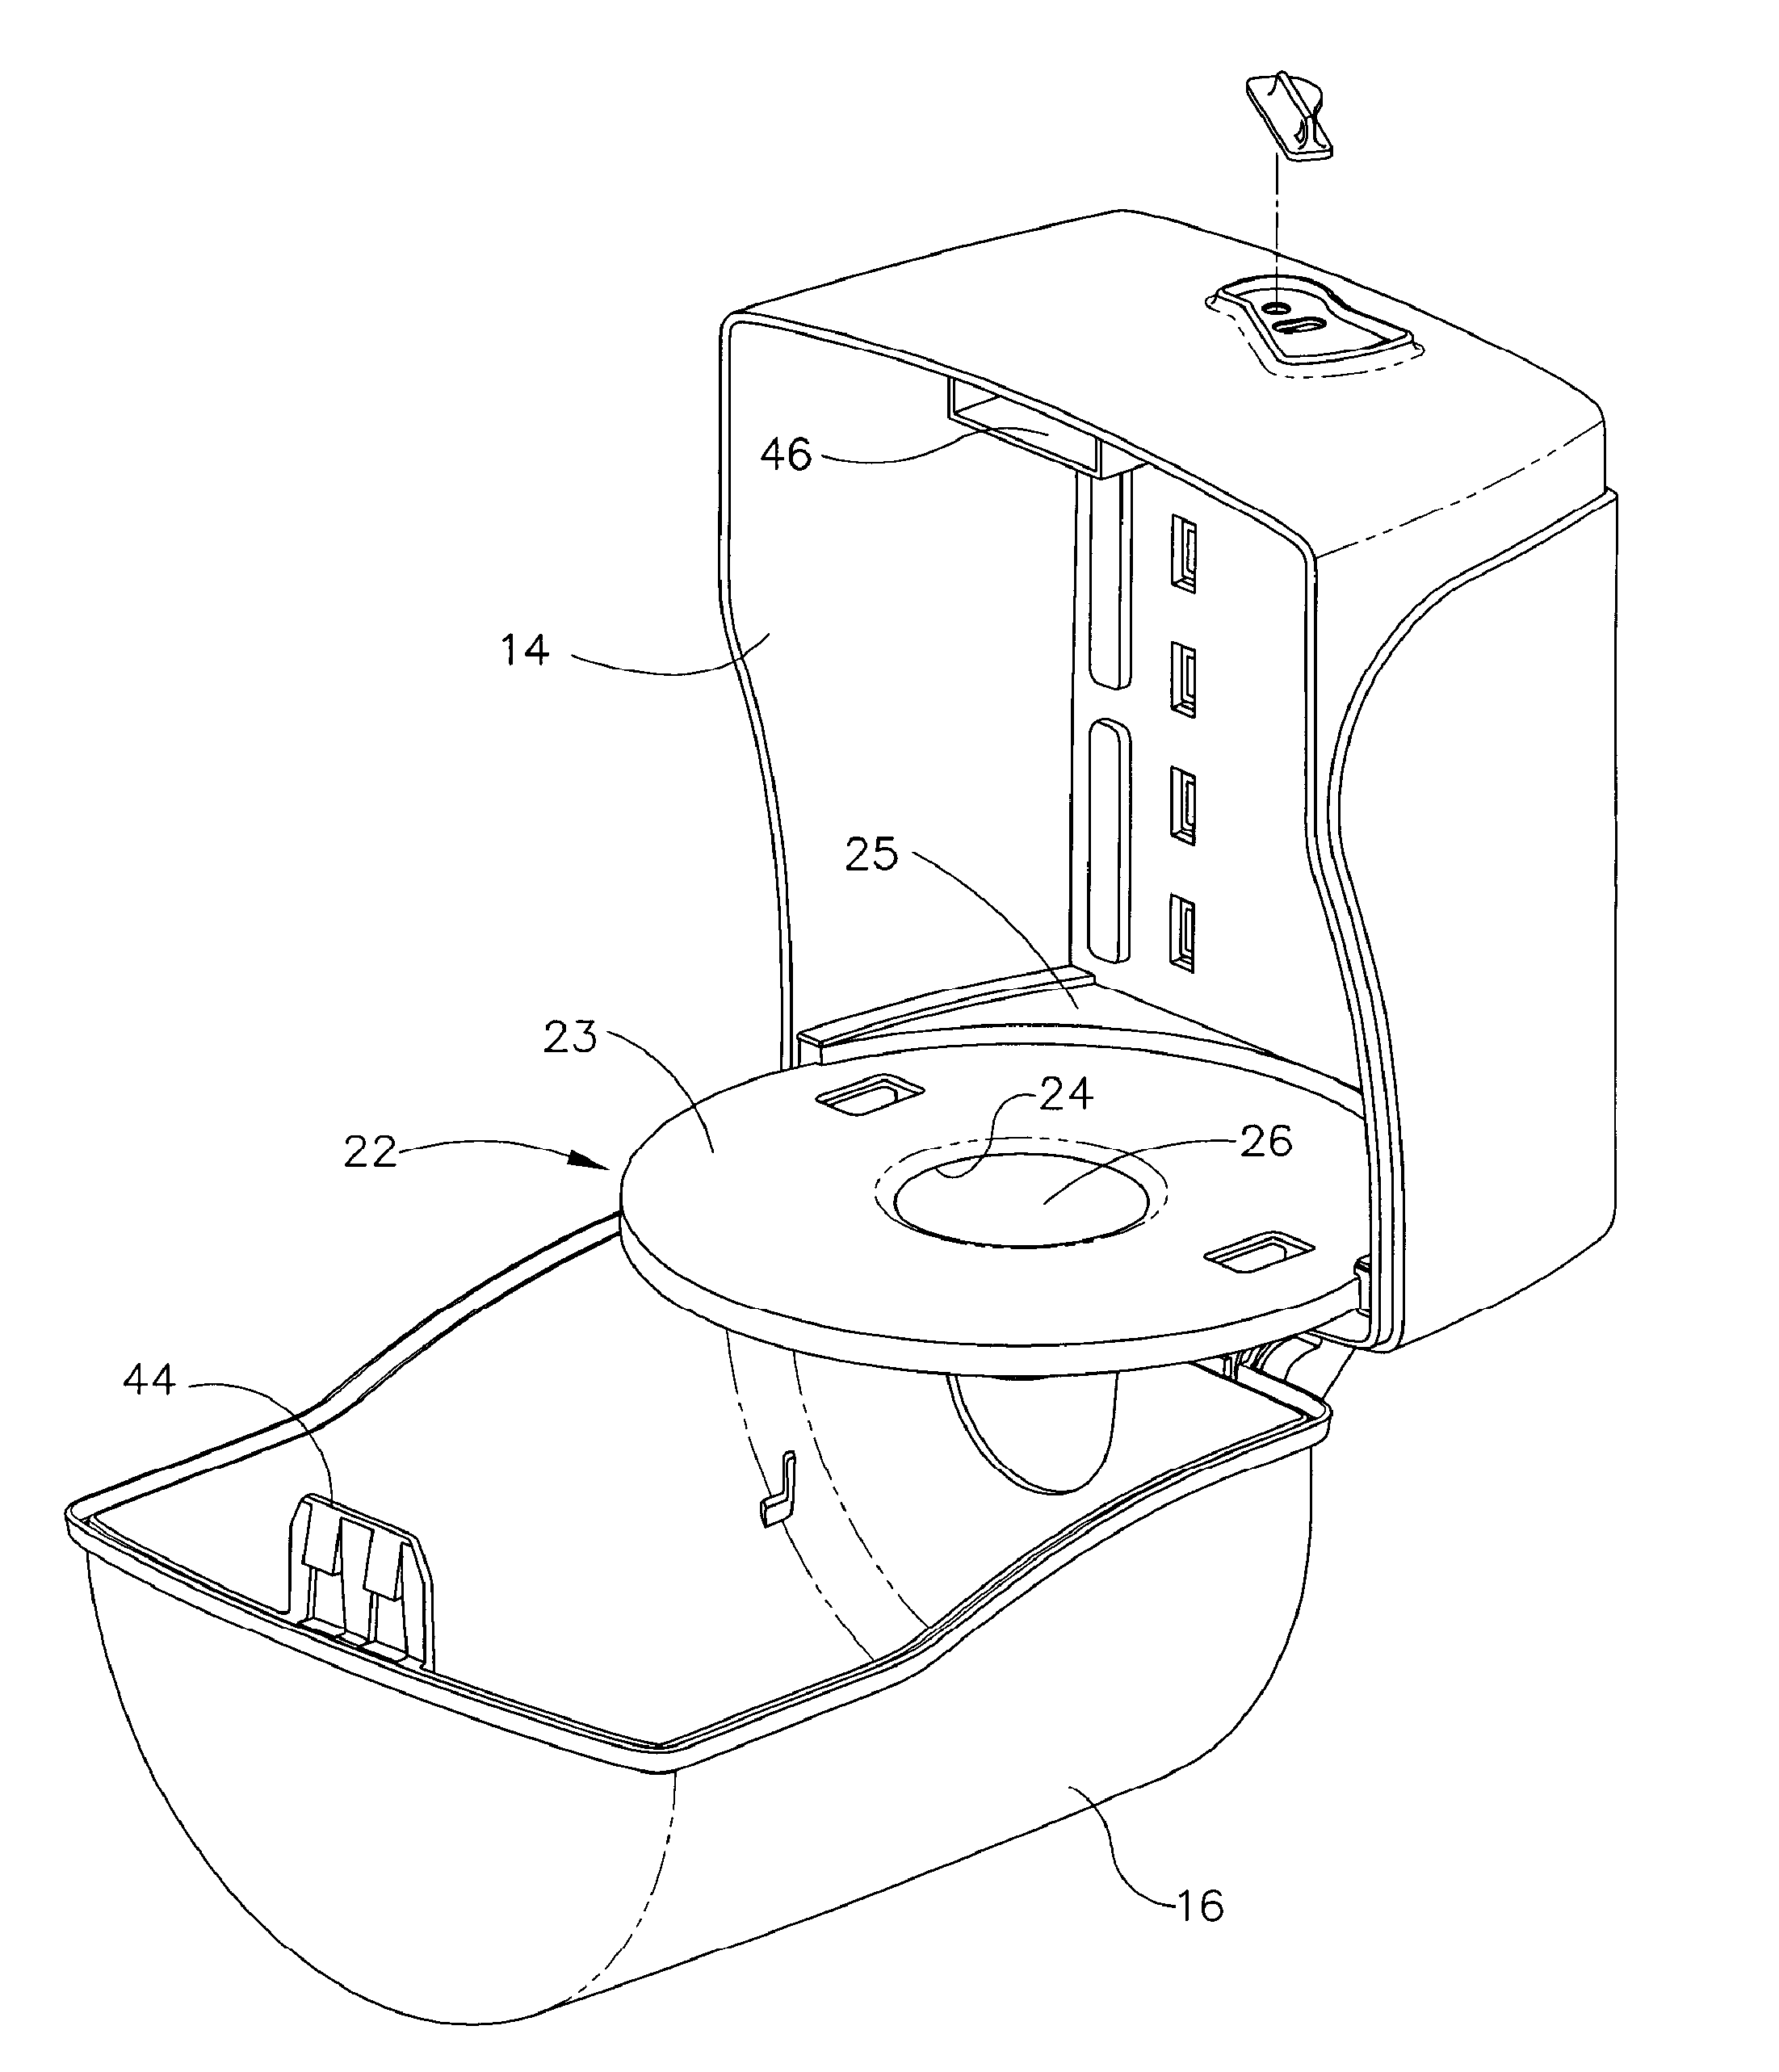 Center-pull paper towel dispenser